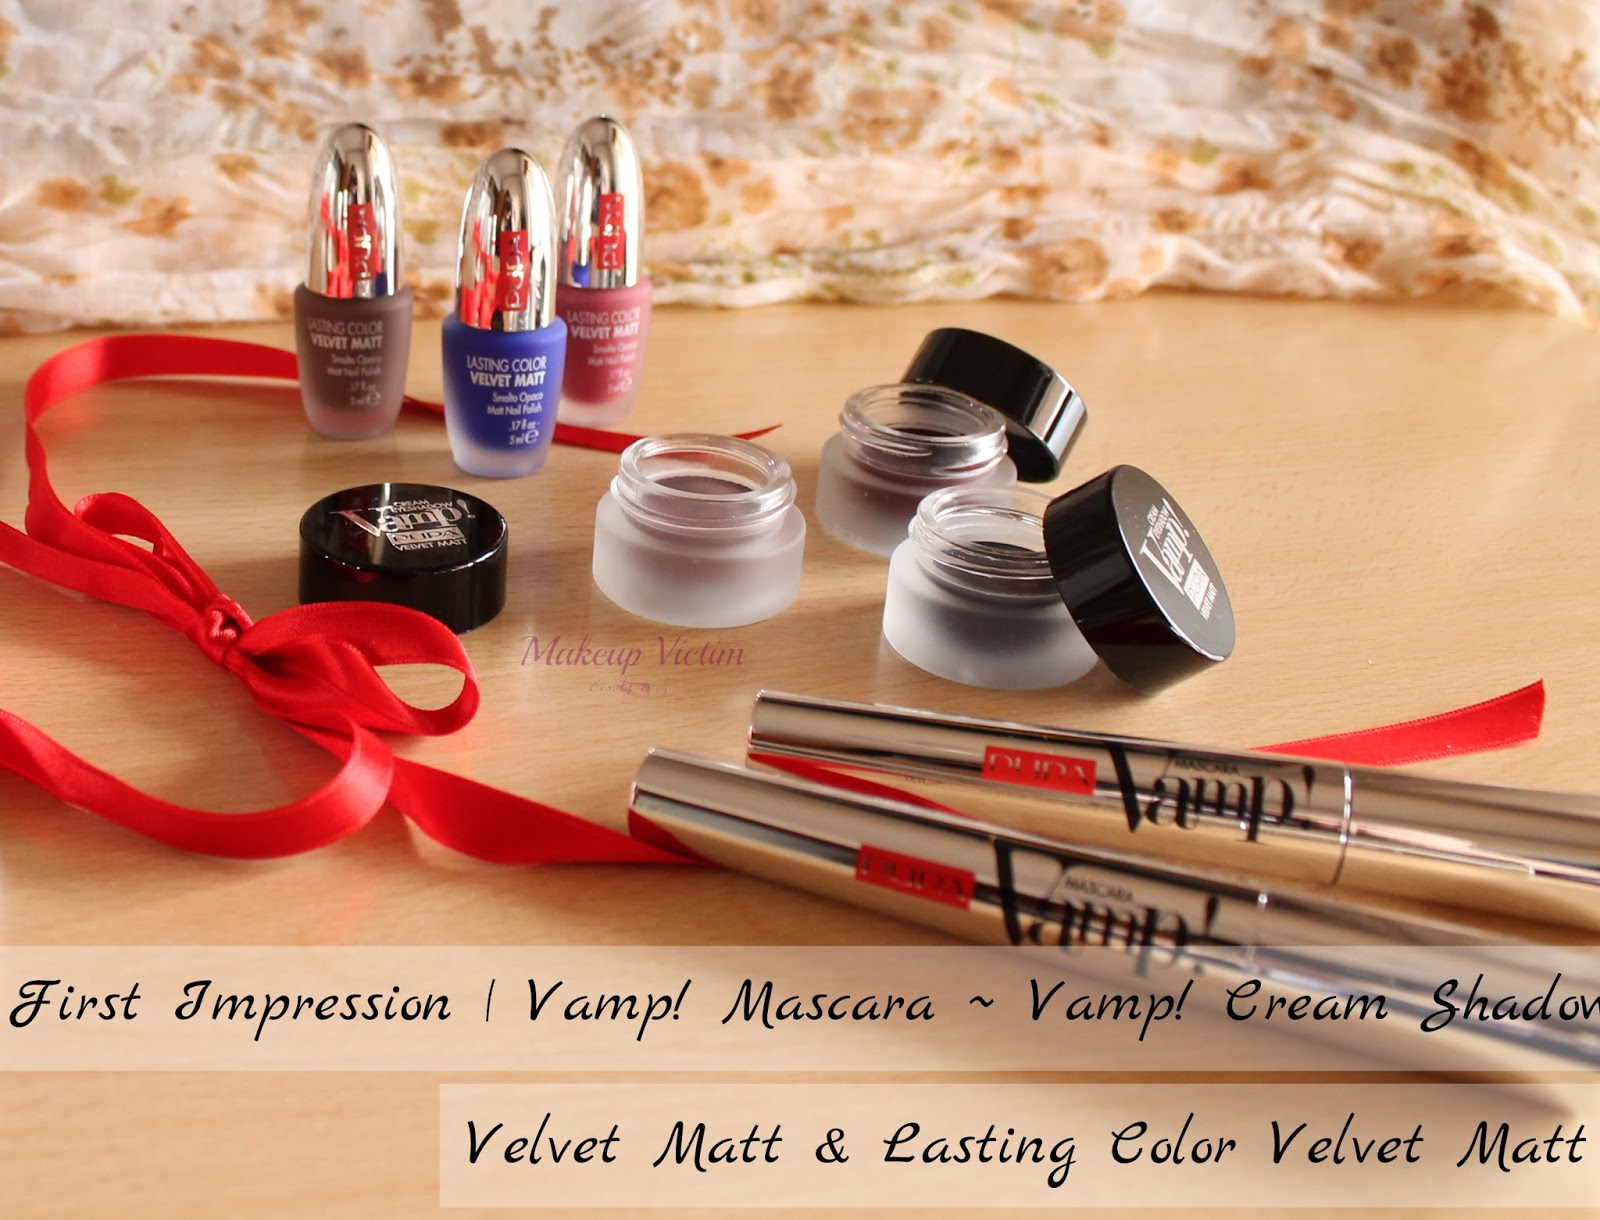 Makeup Victim: First Impression  Vamp! Mascara, Vamp! Cream Shadow Velvet  Matt & Lasting Color Velvet Matt